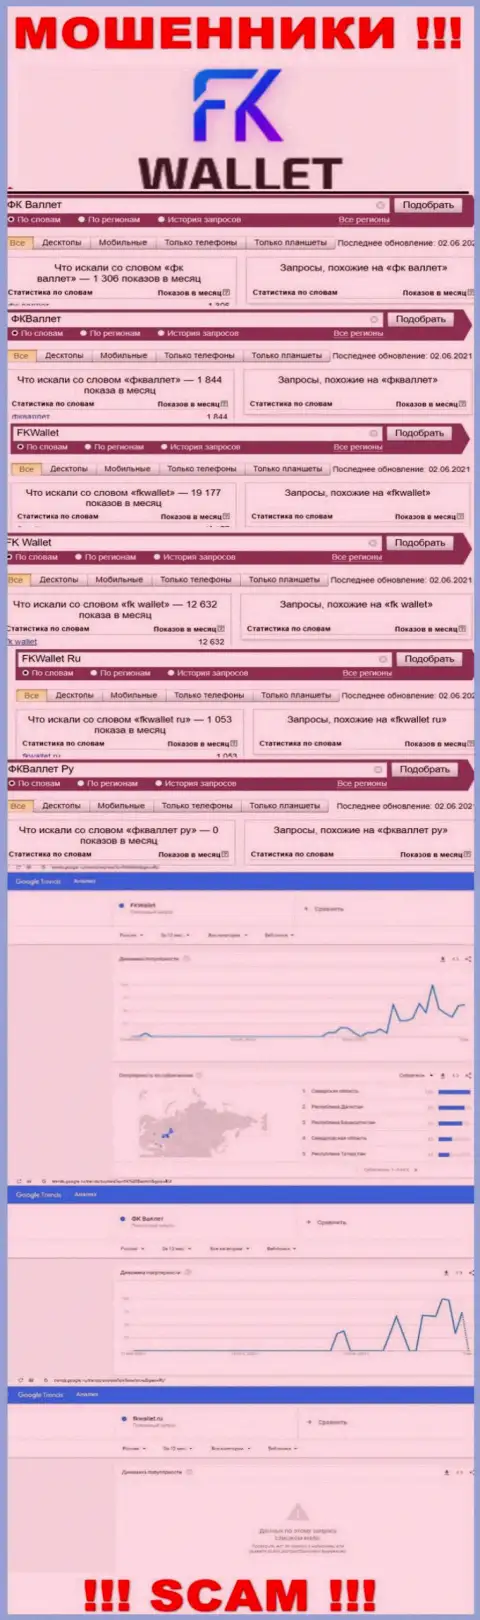 Скрин результатов онлайн запросов по мошеннической конторе FKWallet Ru